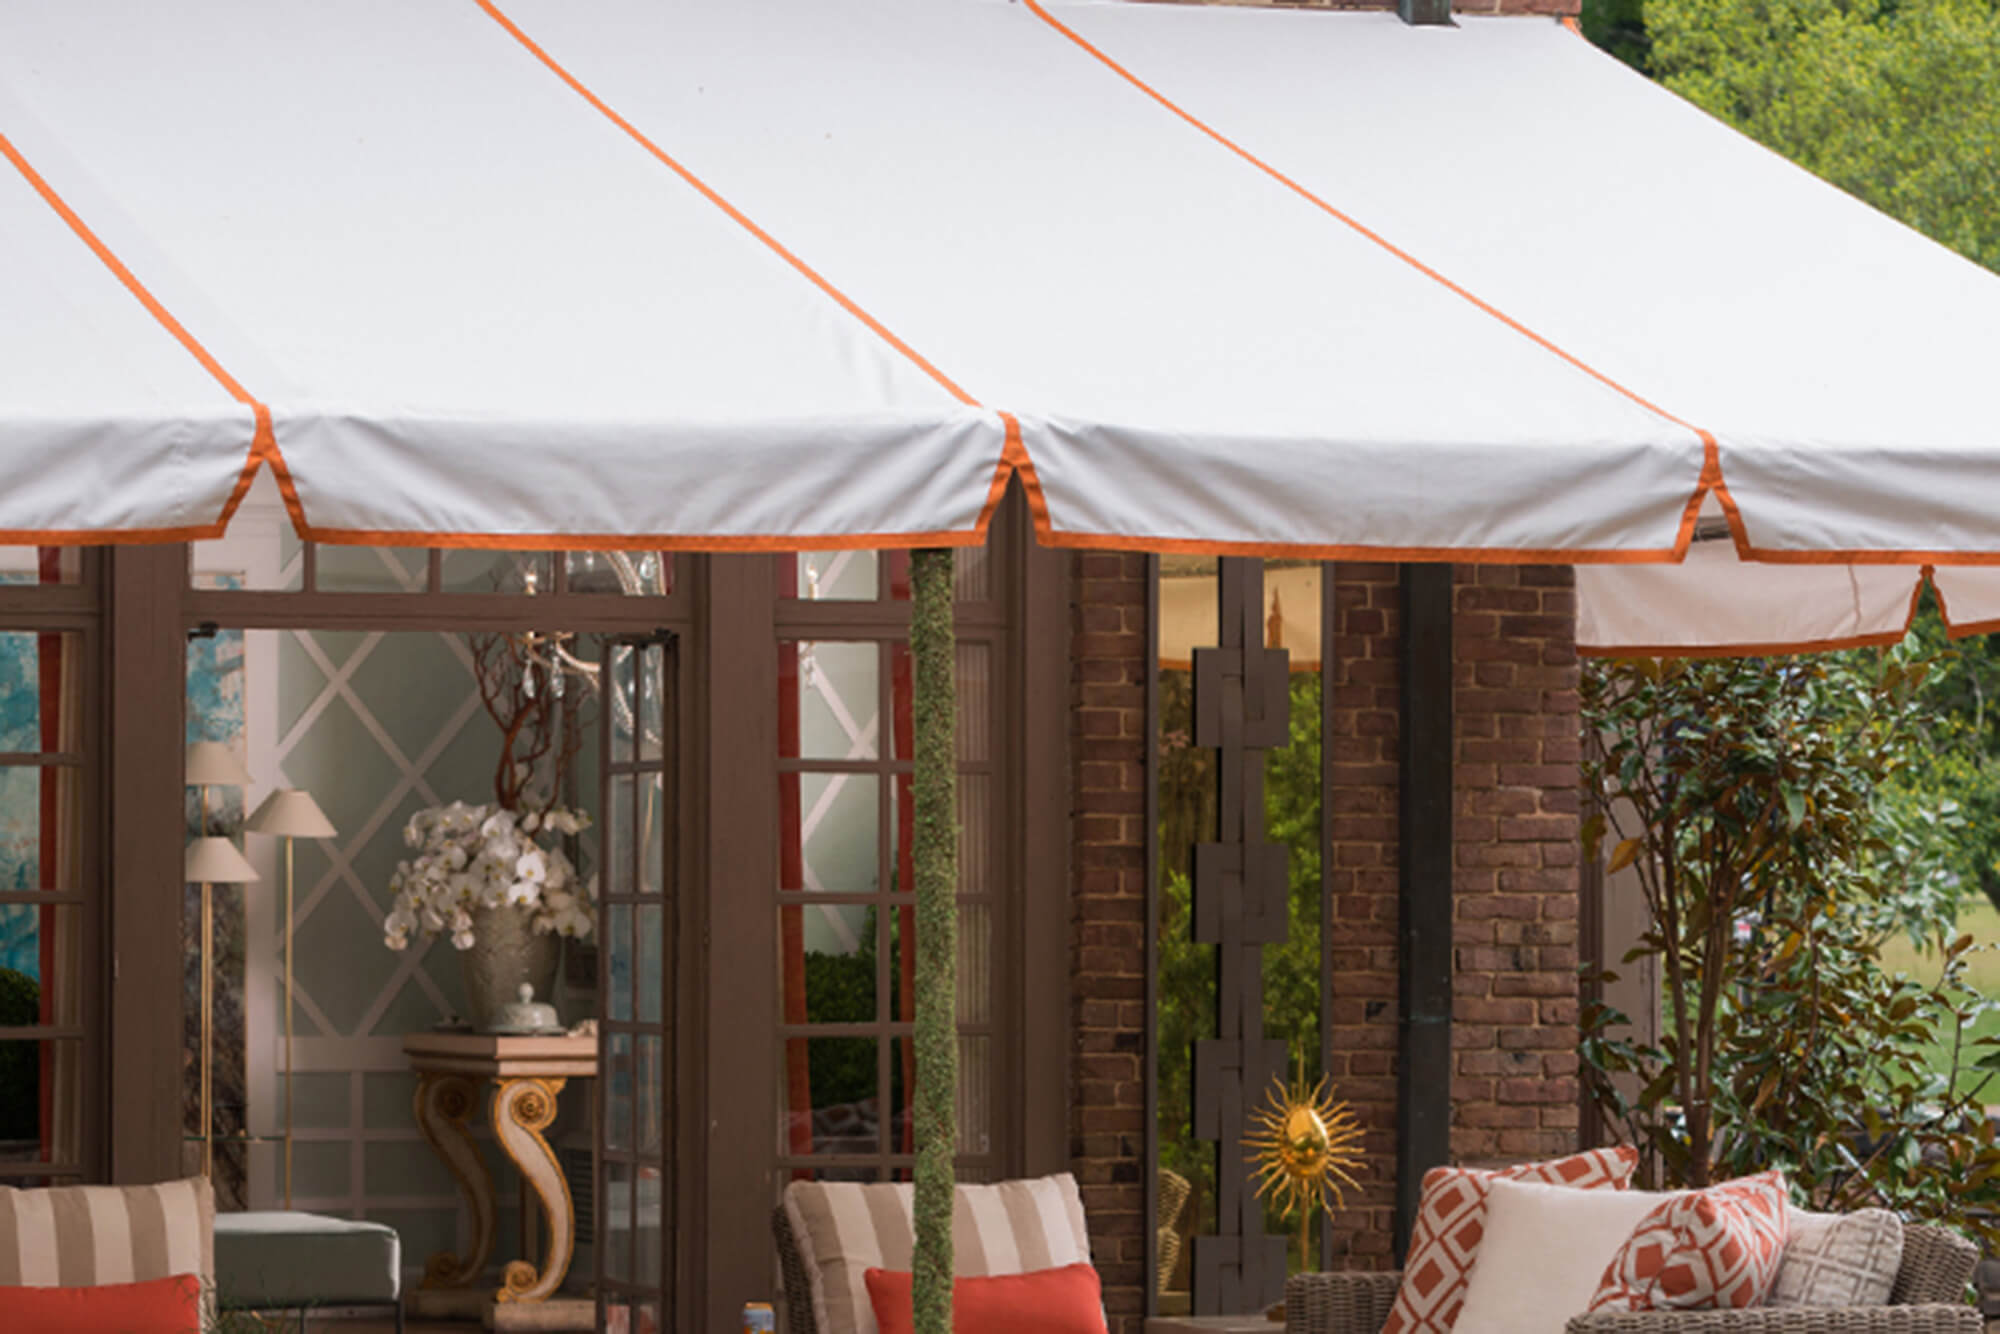 Un patio cubierto por un toldo de marco fijo con tela Sunbrella blanca y vivos en naranja